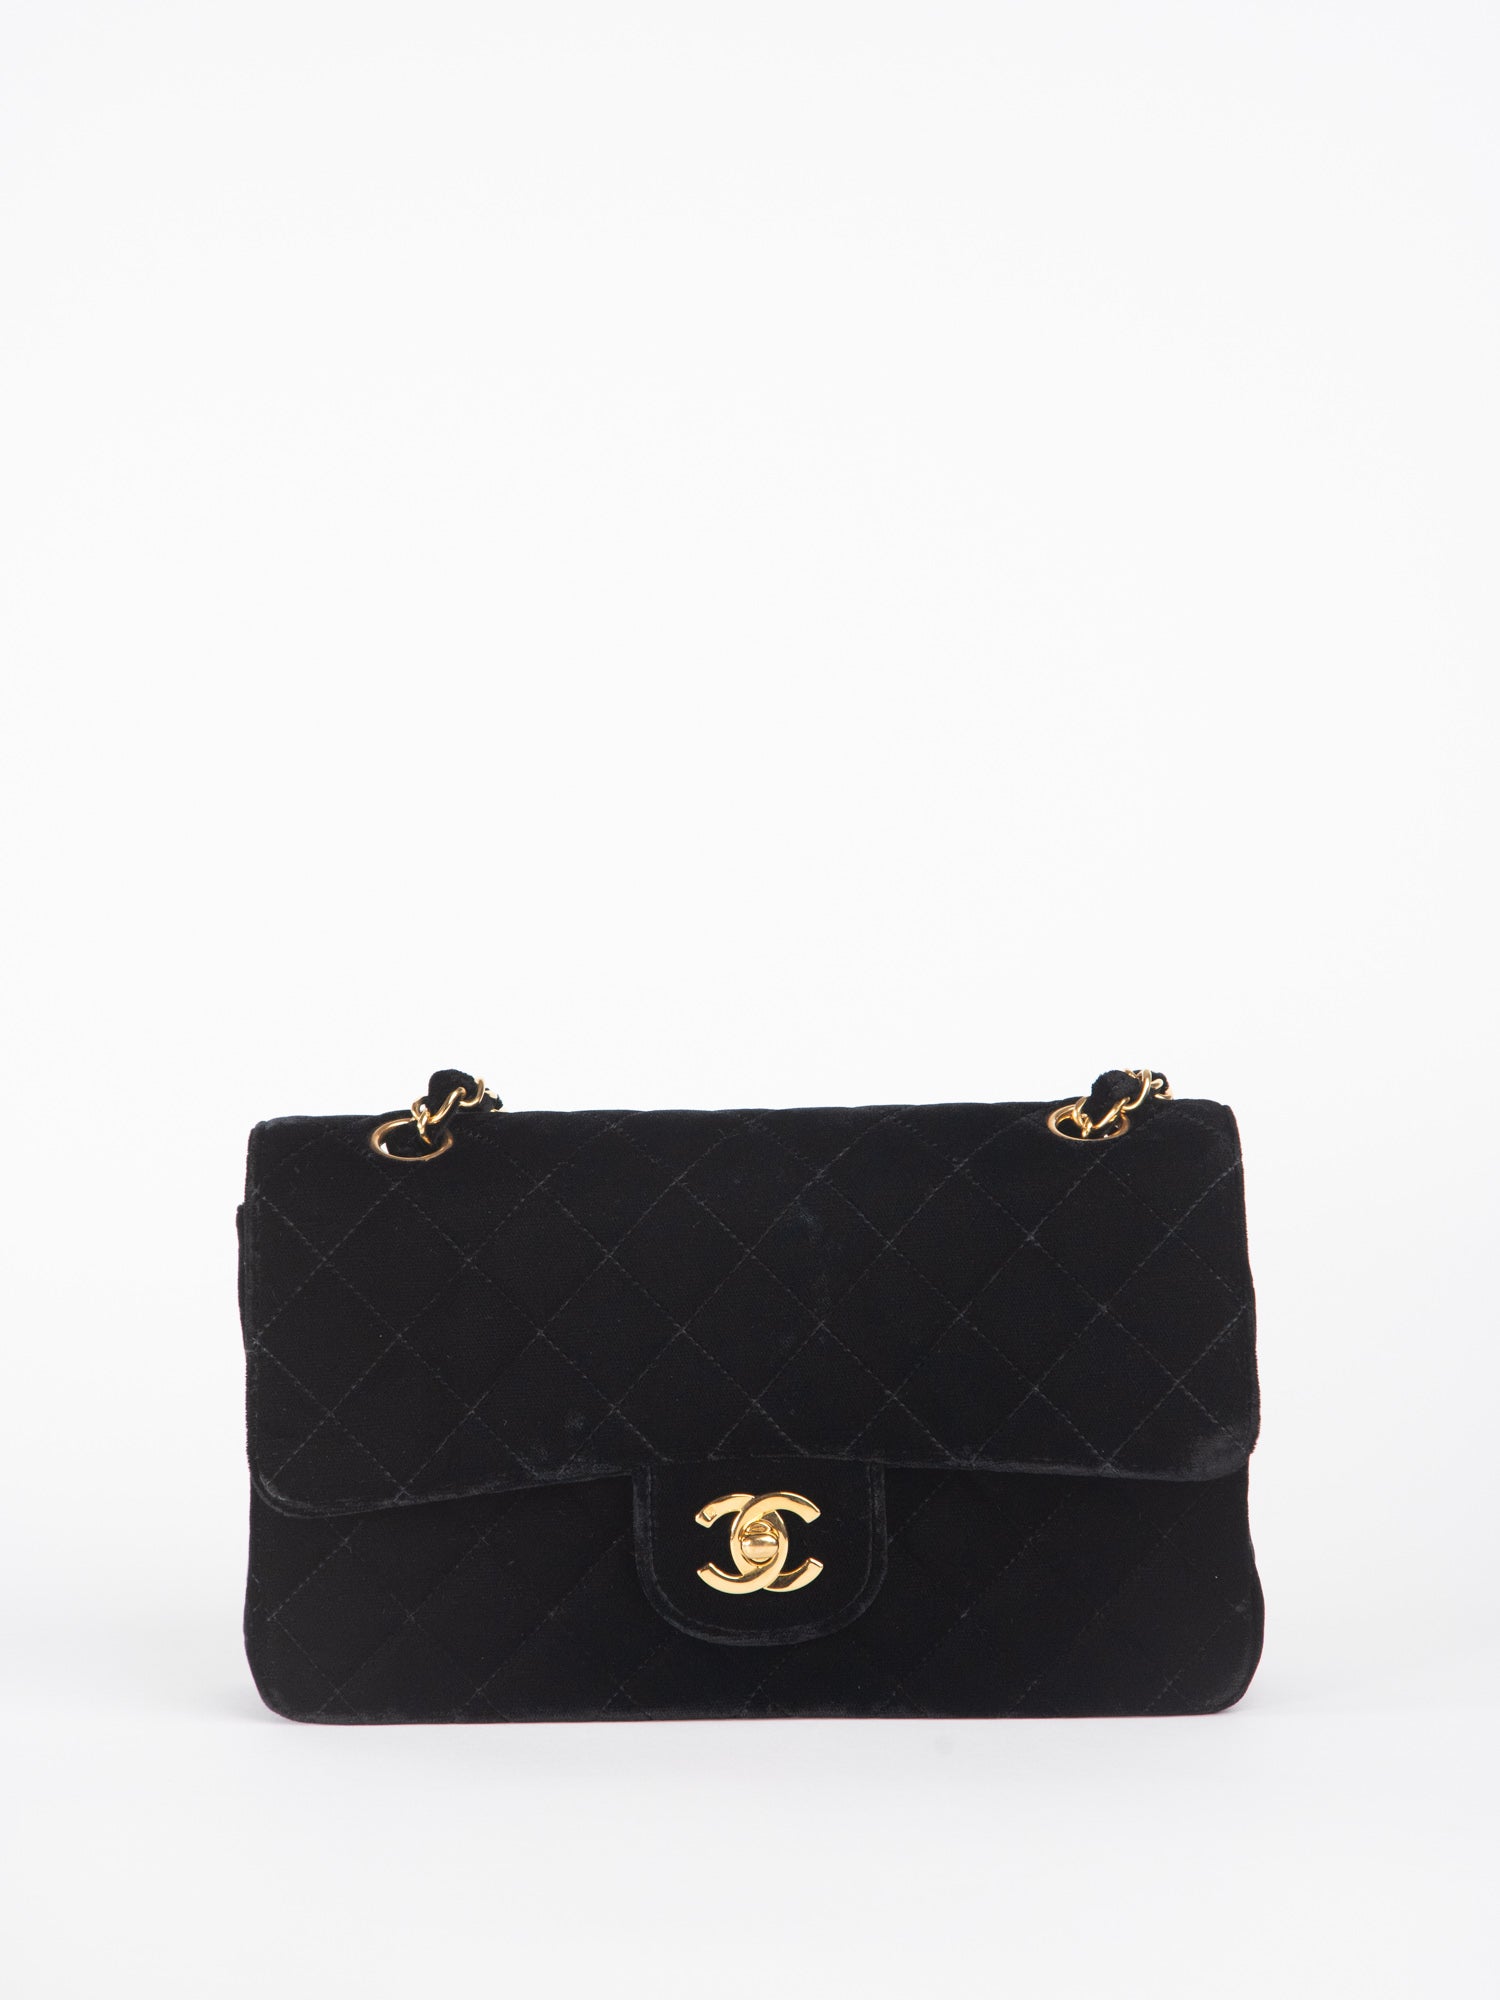 shoulder bag chanel purse black